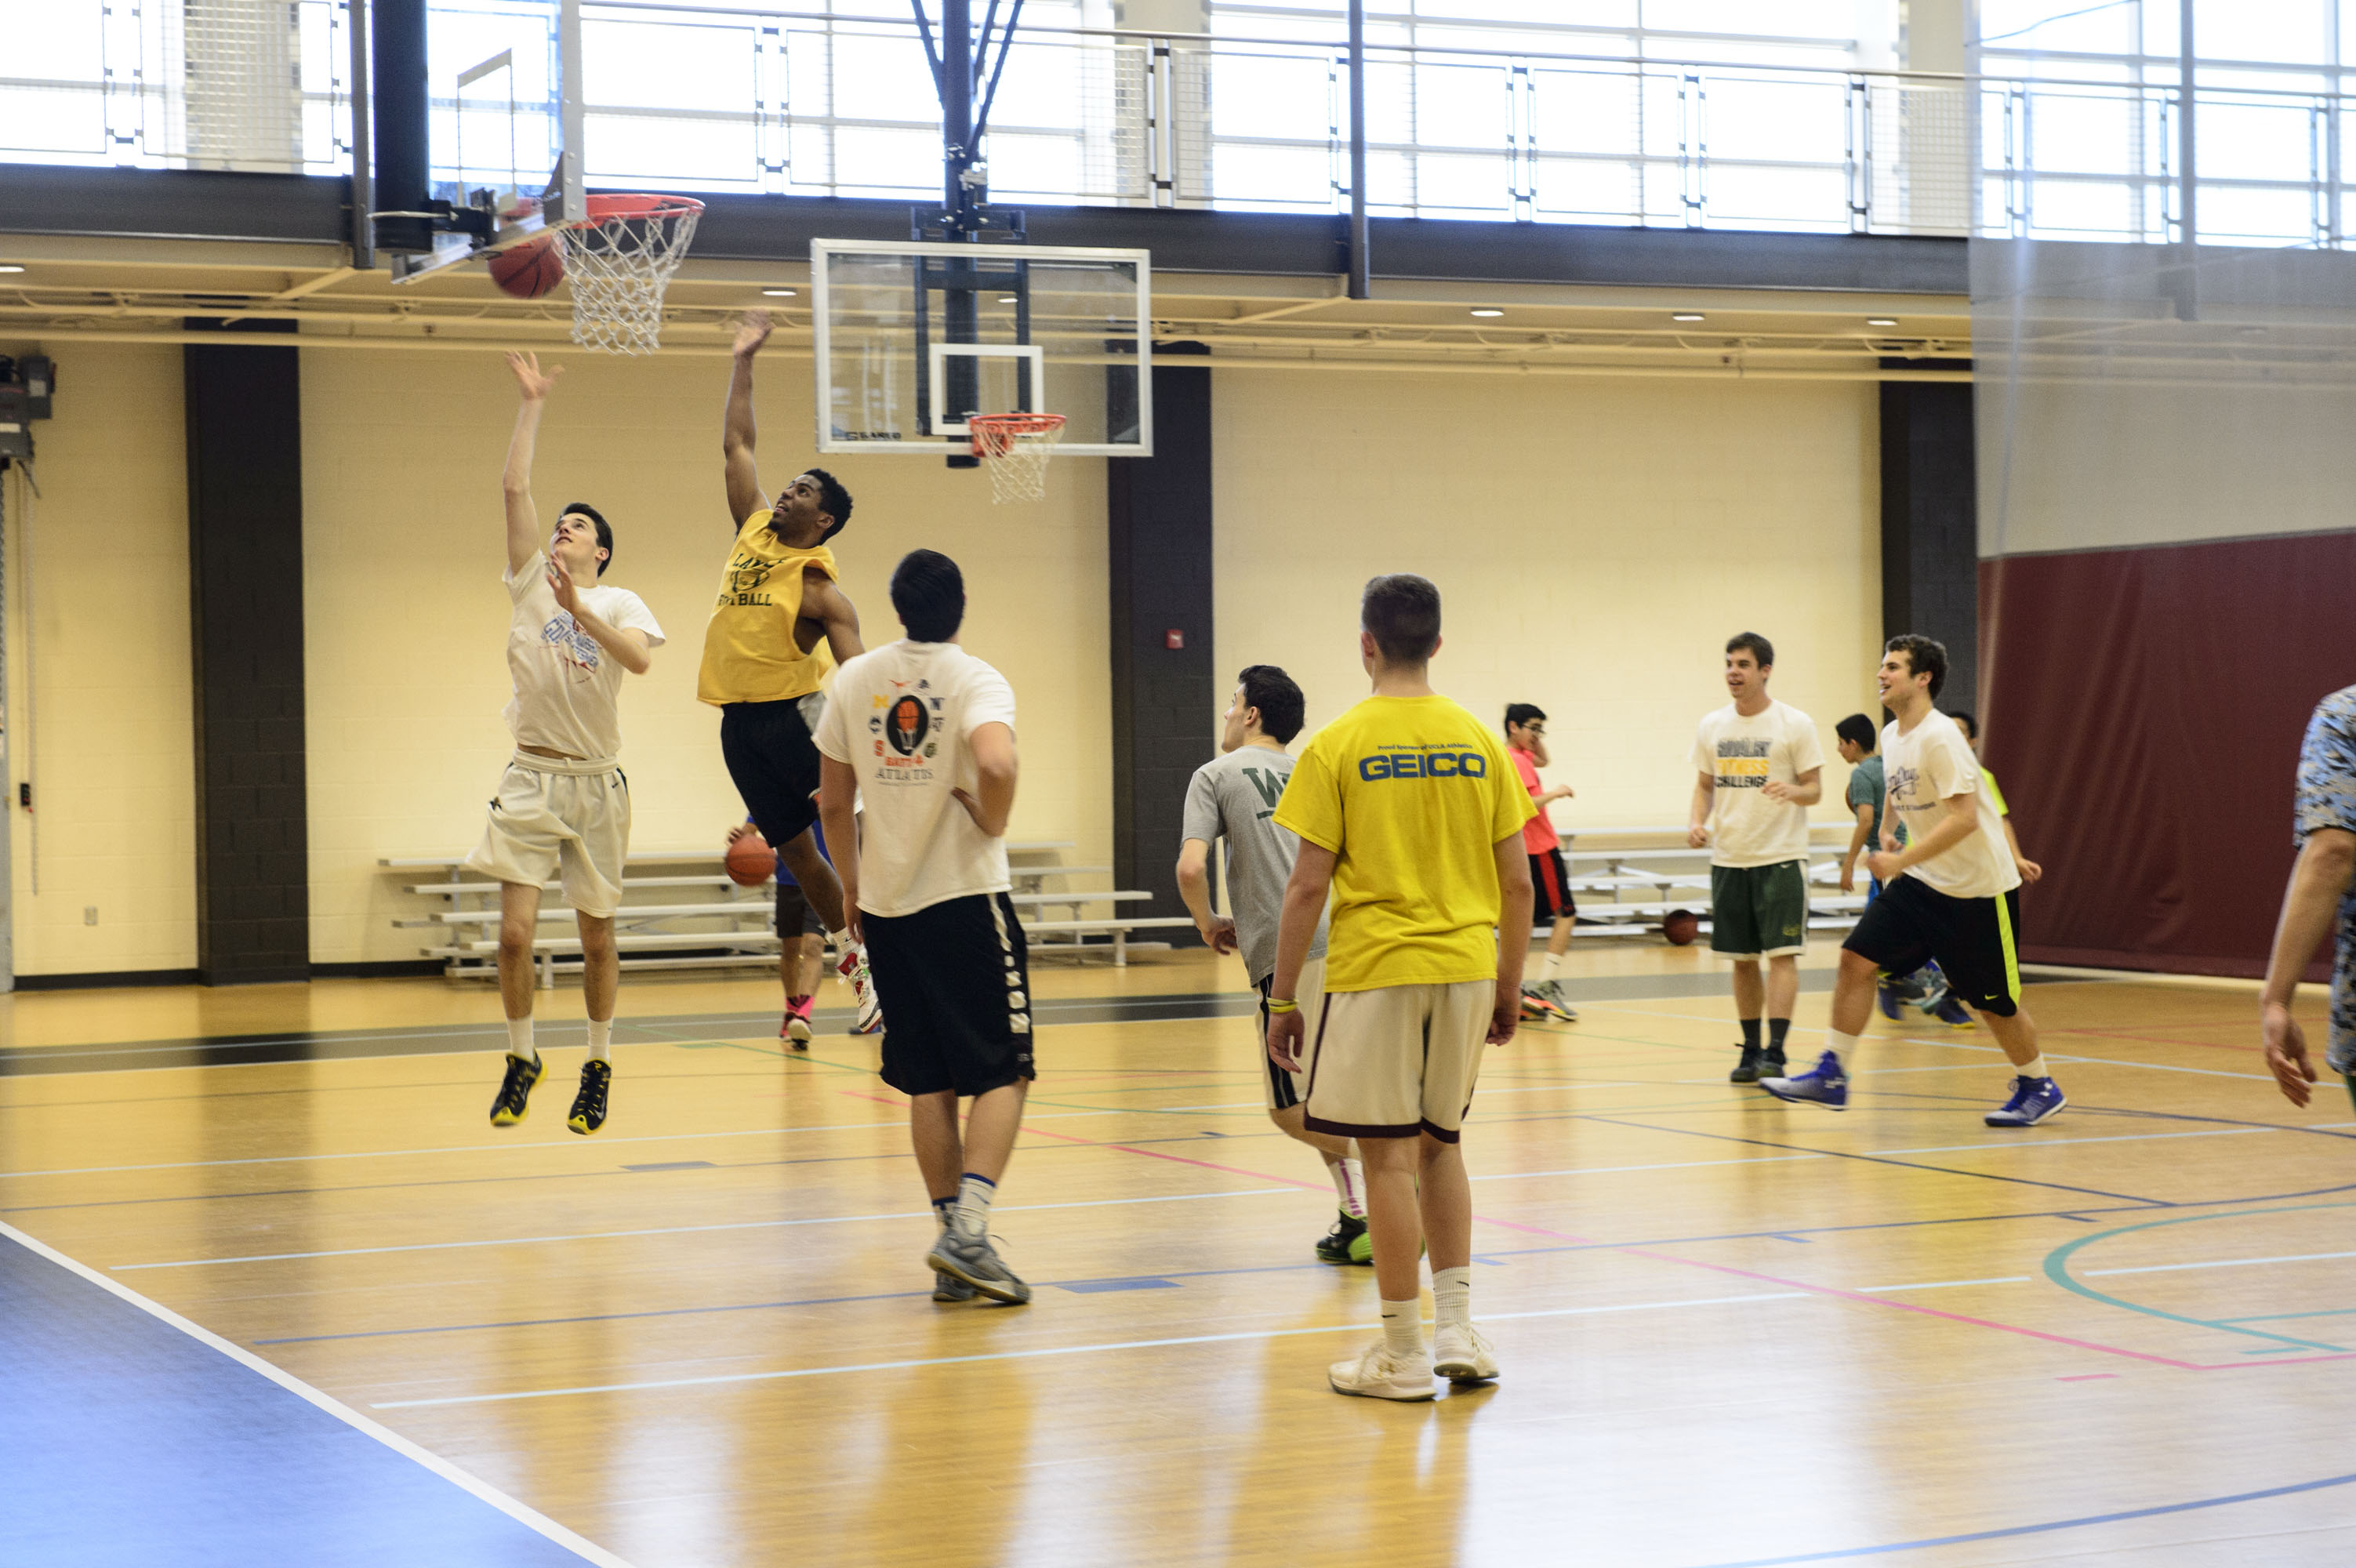 Teams playing basketball